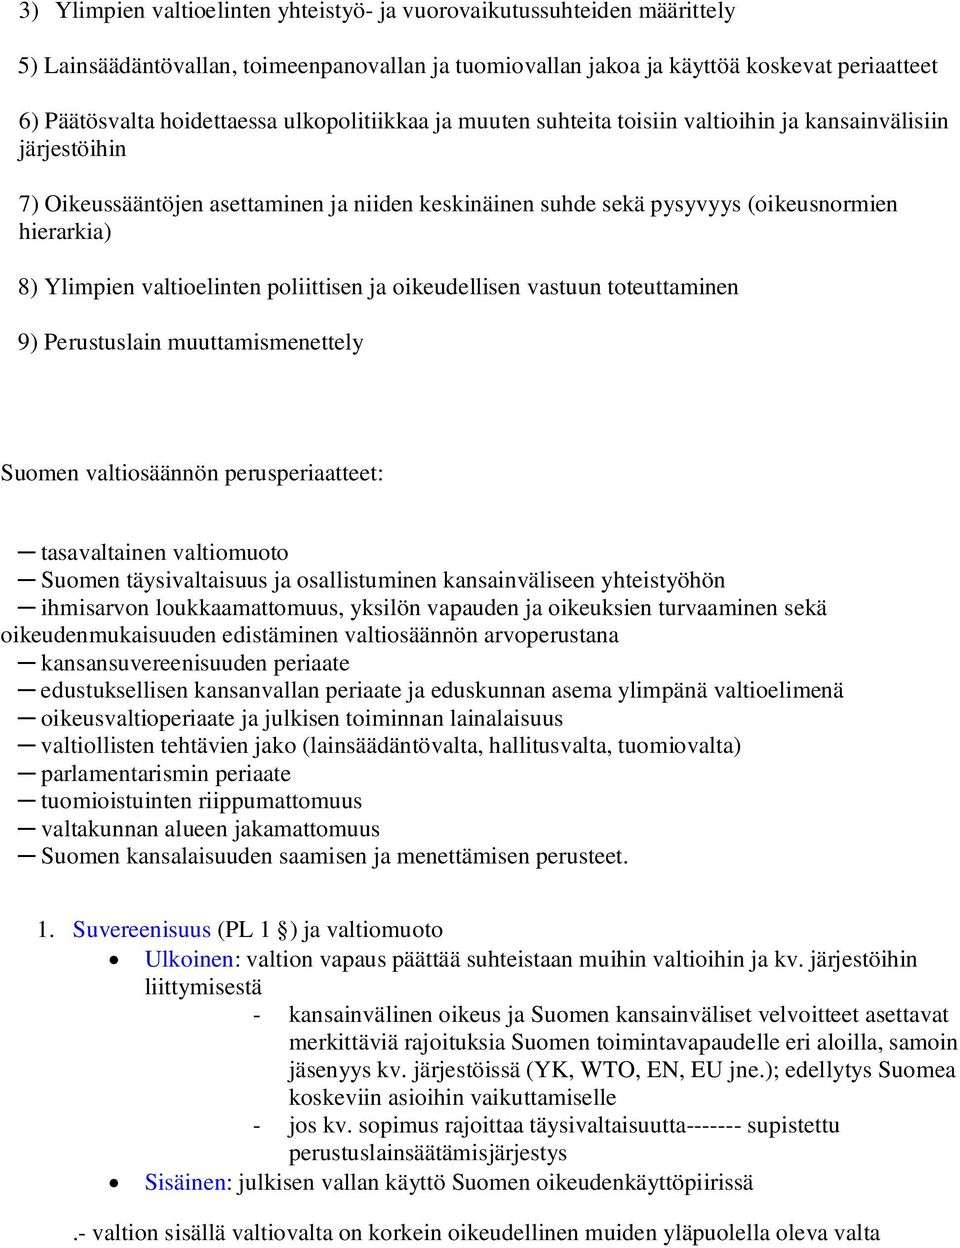 valtioelinten poliittisen ja oikeudellisen vastuun toteuttaminen 9) Perustuslain muuttamismenettely Suomen valtiosäännön perusperiaatteet: tasavaltainen valtiomuoto Suomen täysivaltaisuus ja